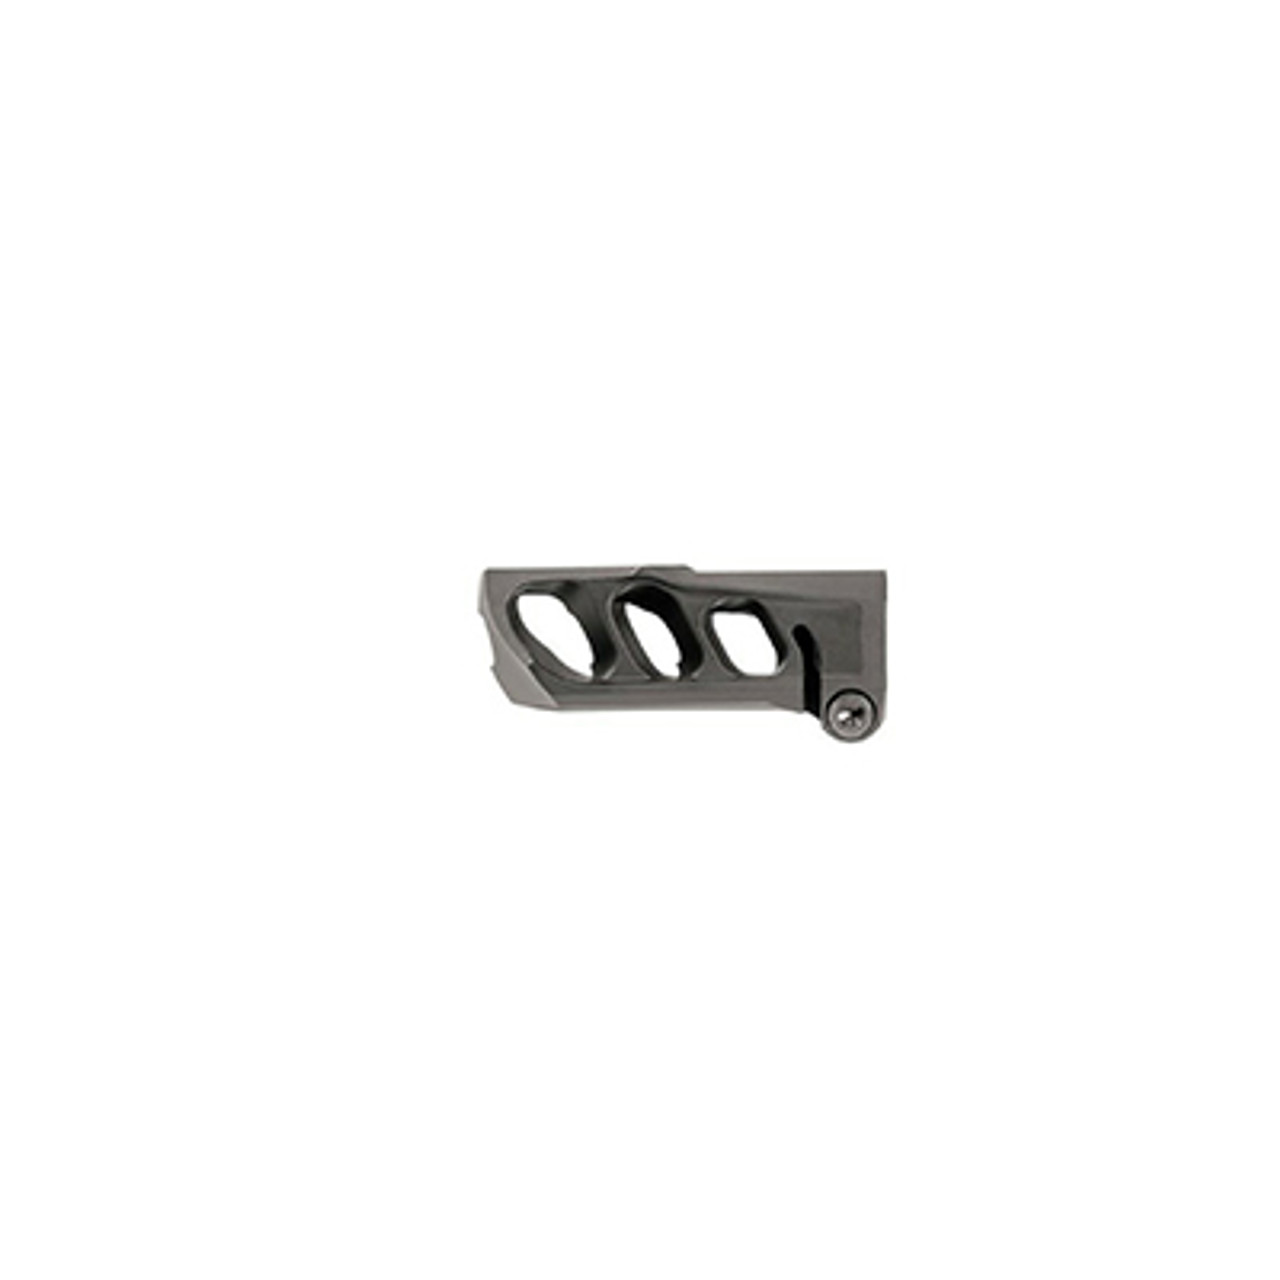 Cadex MX1 Micro Muzzle Brake for AR15, 1/2-28 for .223/5.56 - Black